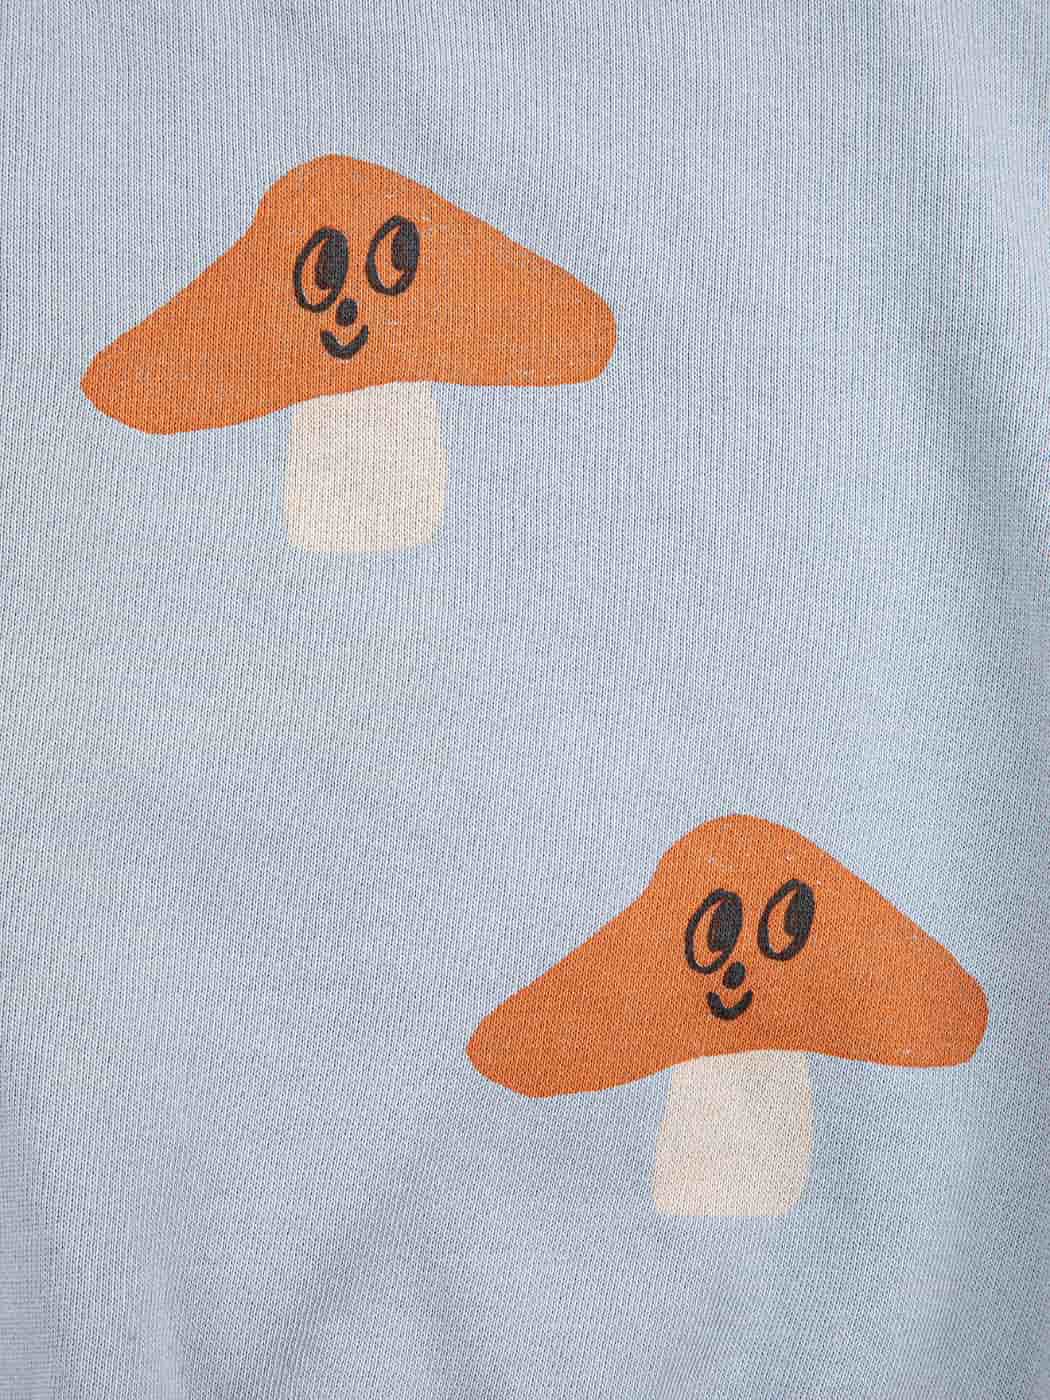 Mr Mushroom All Over Sweatshirt